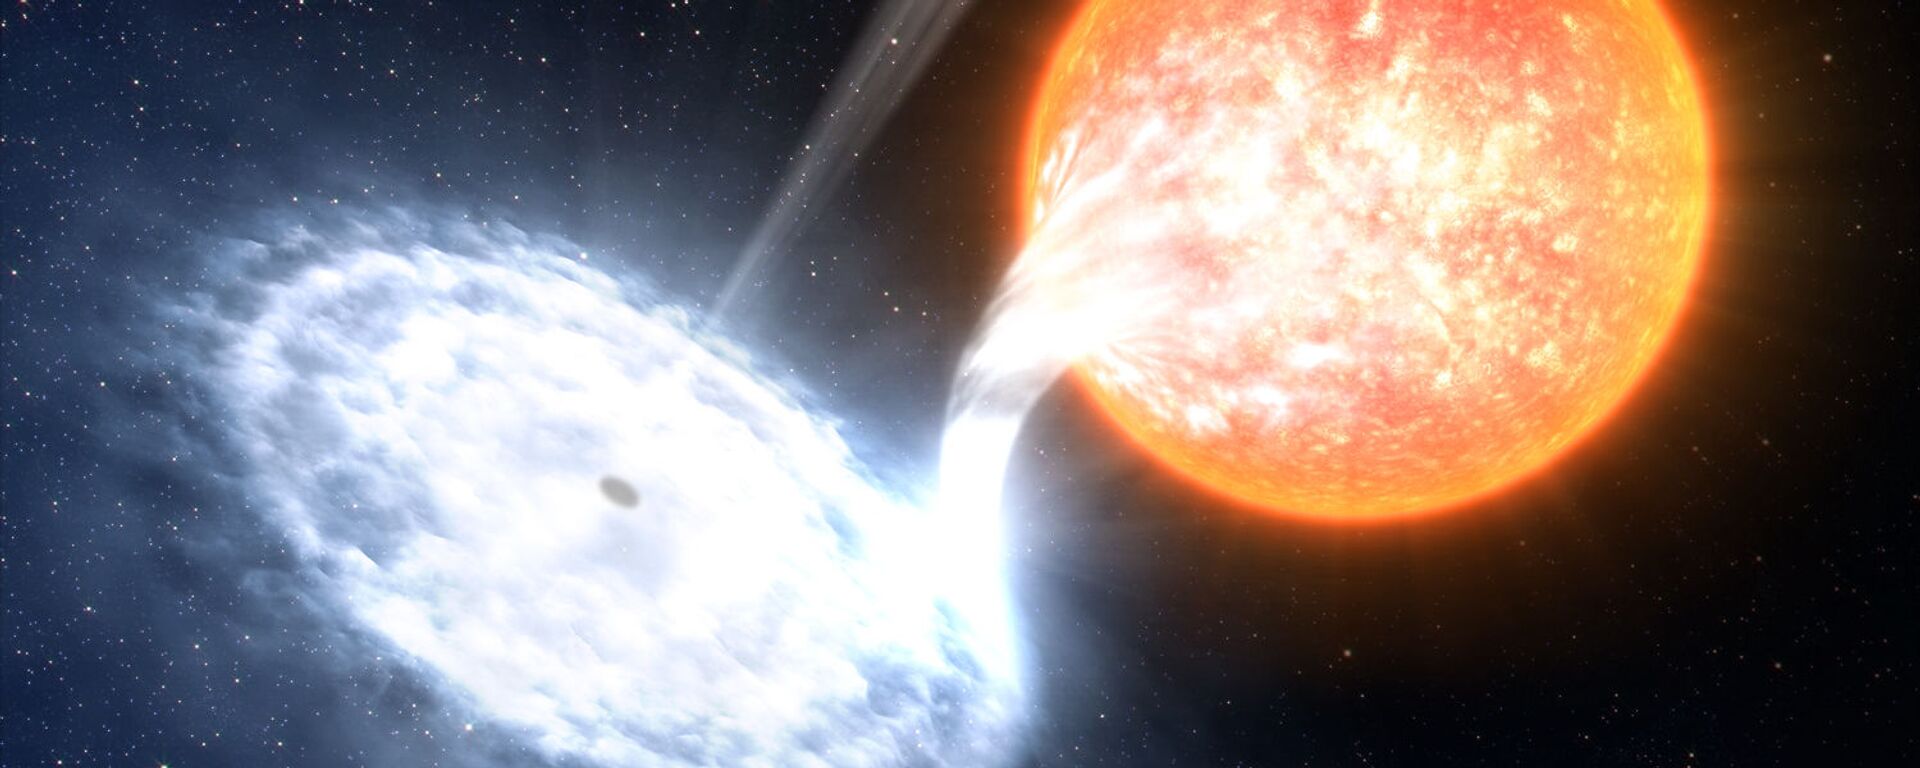 المجرة GX 339-4 - إحدى الثنائيات الأكثر ديناميكية في الفضاء، مع أربعة انفجارات خلال  الأعوام السبعة الماضية. في المجموعة الشمسية، نجم متطور لا يكبر الشمس كثيراً، يدور حول ثقب أسود يقدر حجمه بـ 10 أضعاف من الكتل الشمسية.  - سبوتنيك عربي, 1920, 22.10.2022